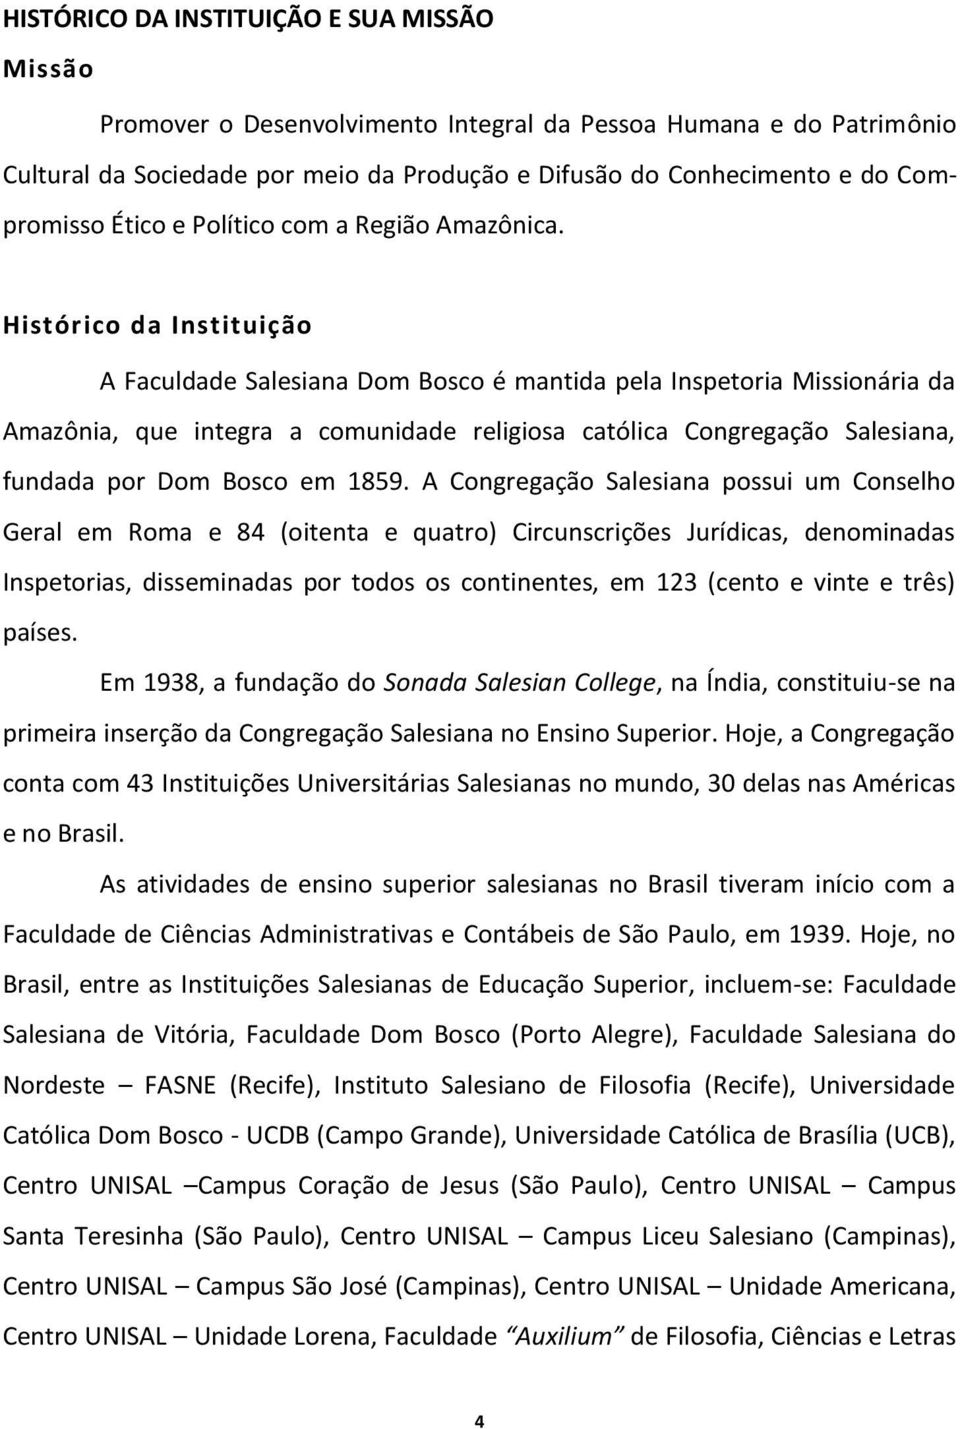 Histórico da Instituição A Faculdade Salesiana Dom Bosco é mantida pela Inspetoria Missionária da Amazônia, que integra a comunidade religiosa católica Congregação Salesiana, fundada por Dom Bosco em